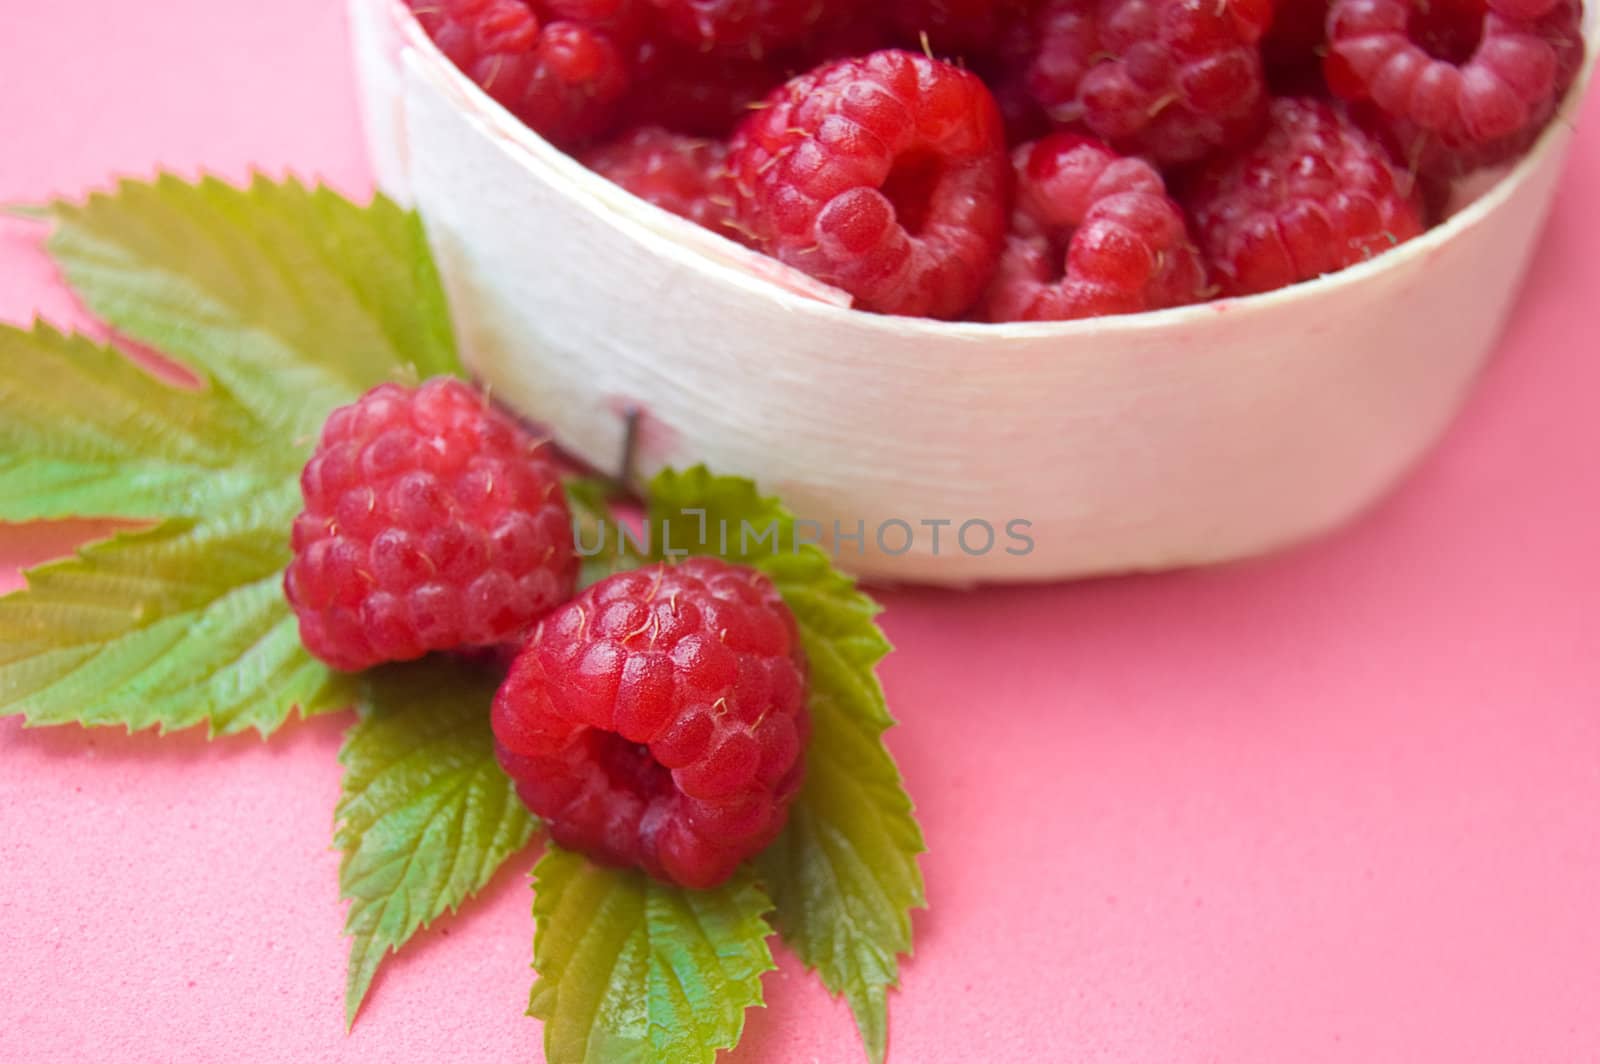 Raspberries in wooden basket with leaves